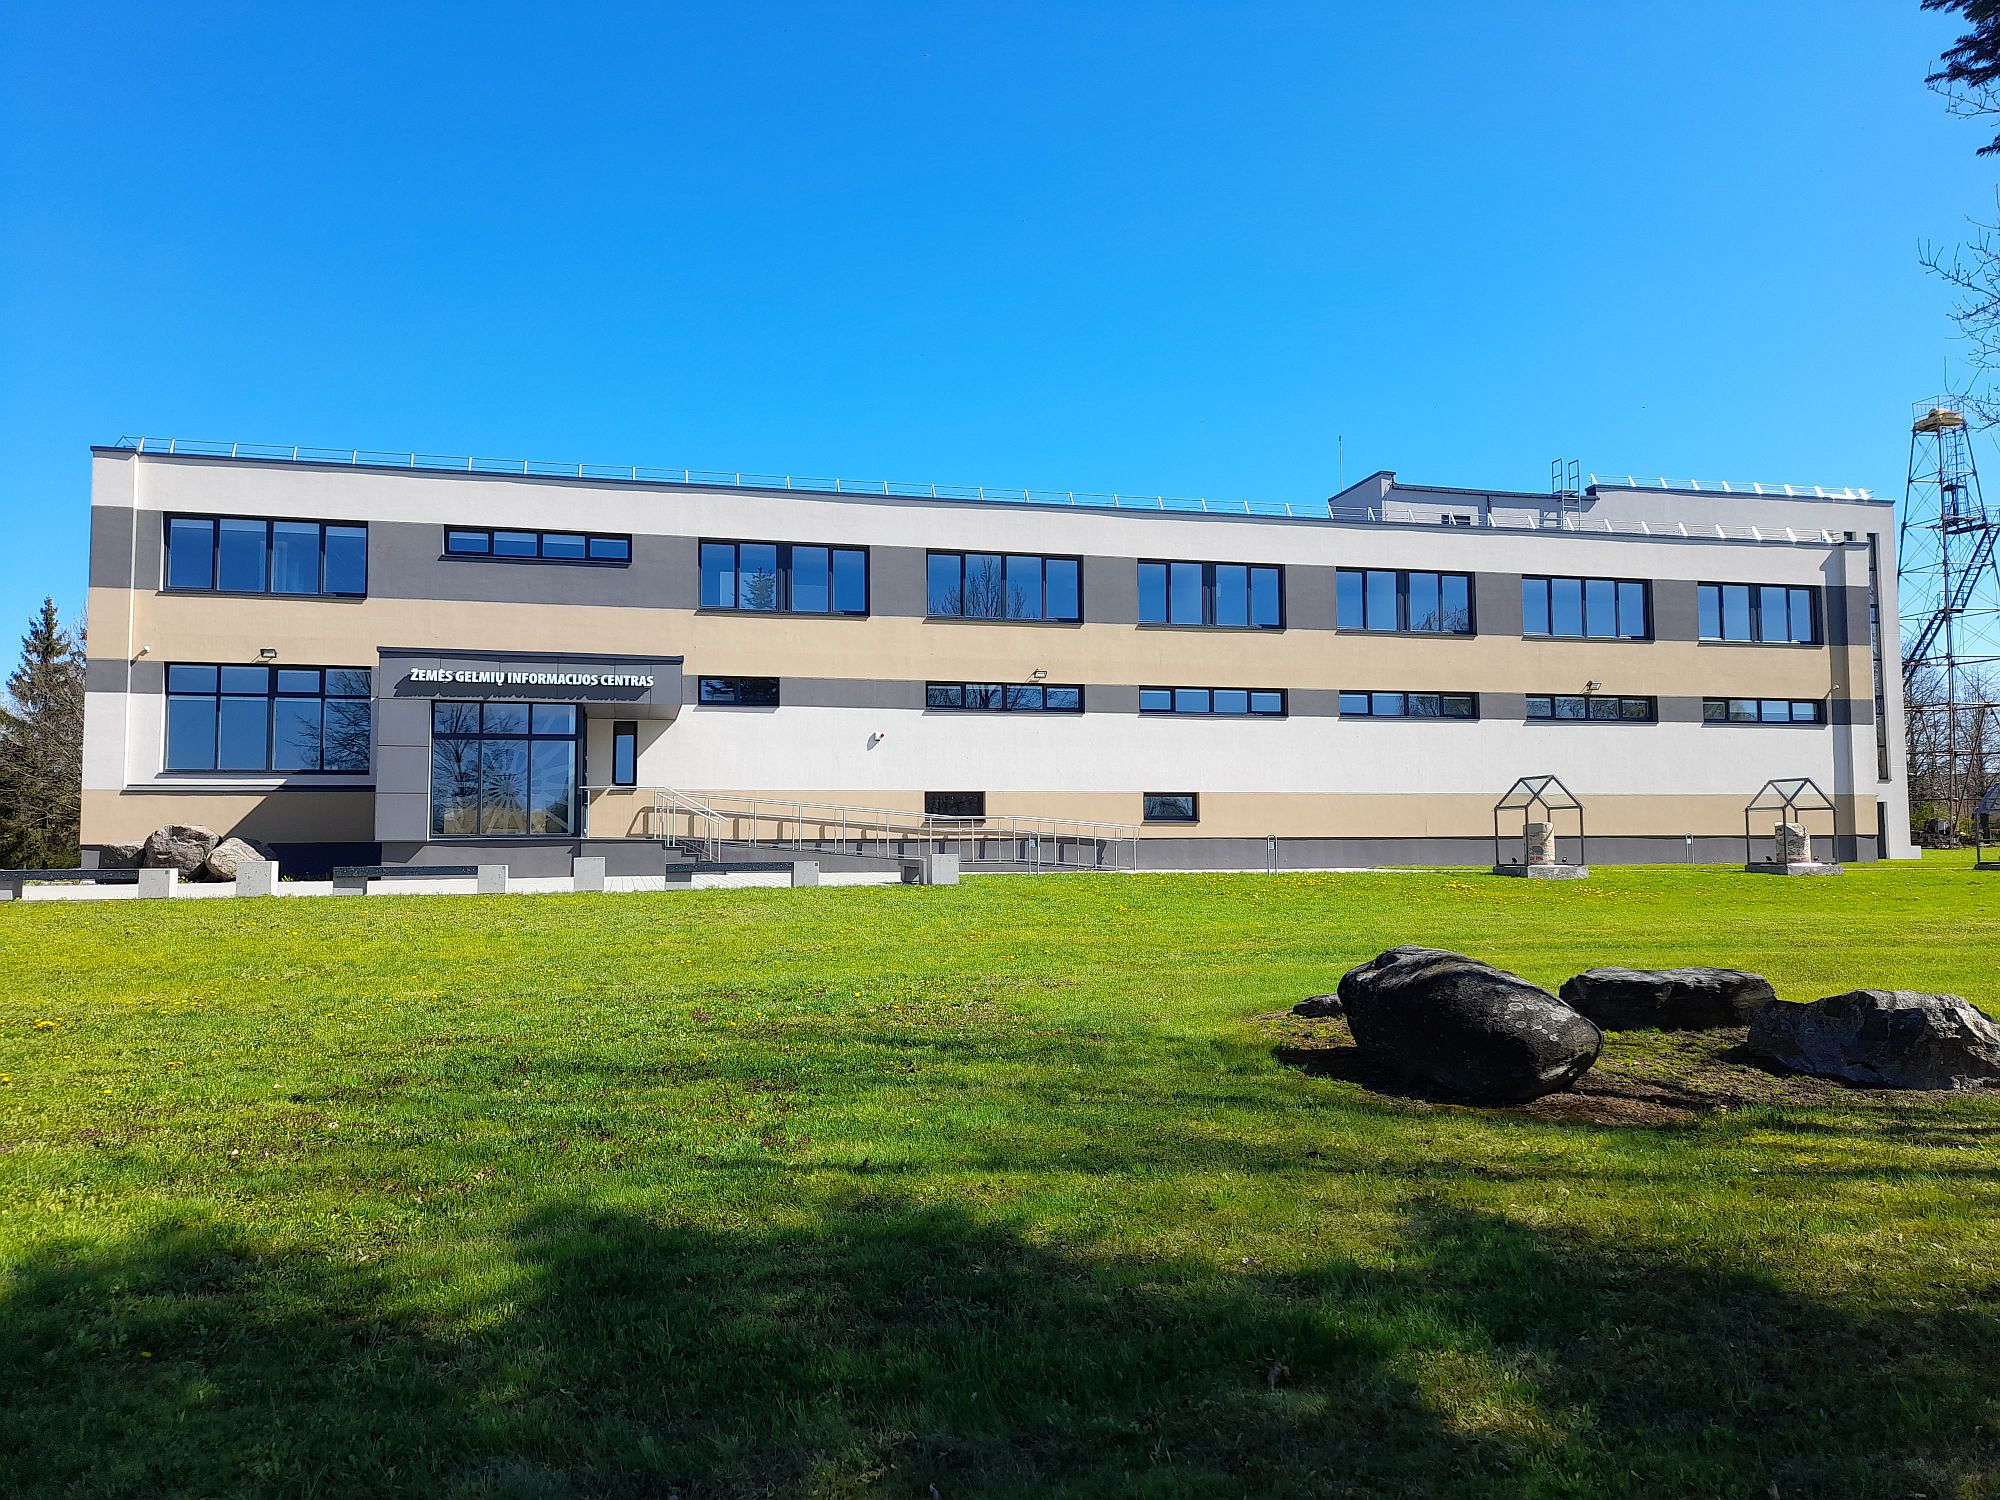 Baigtas Lietuvos geologijos tarnybos Žemės gelmių informacijos centro pastato, esančio Vievyje, rekonstrukcijos projektas